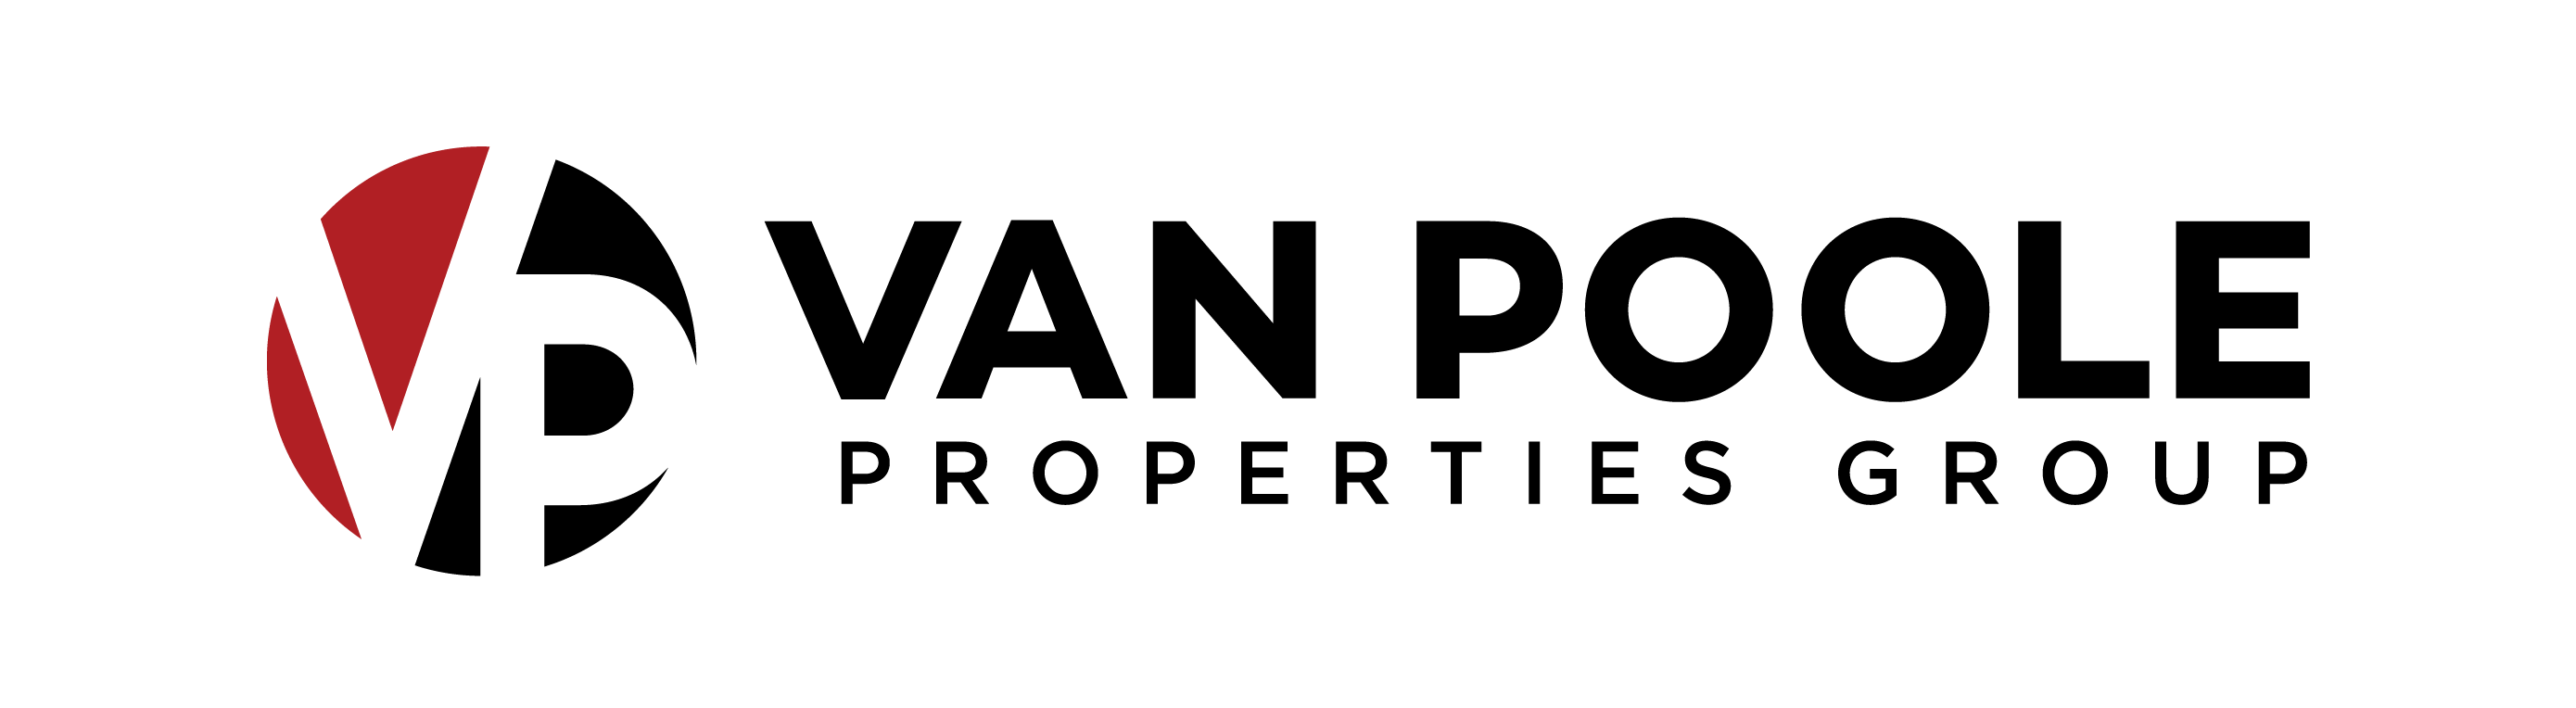 Van Poole Properties Group